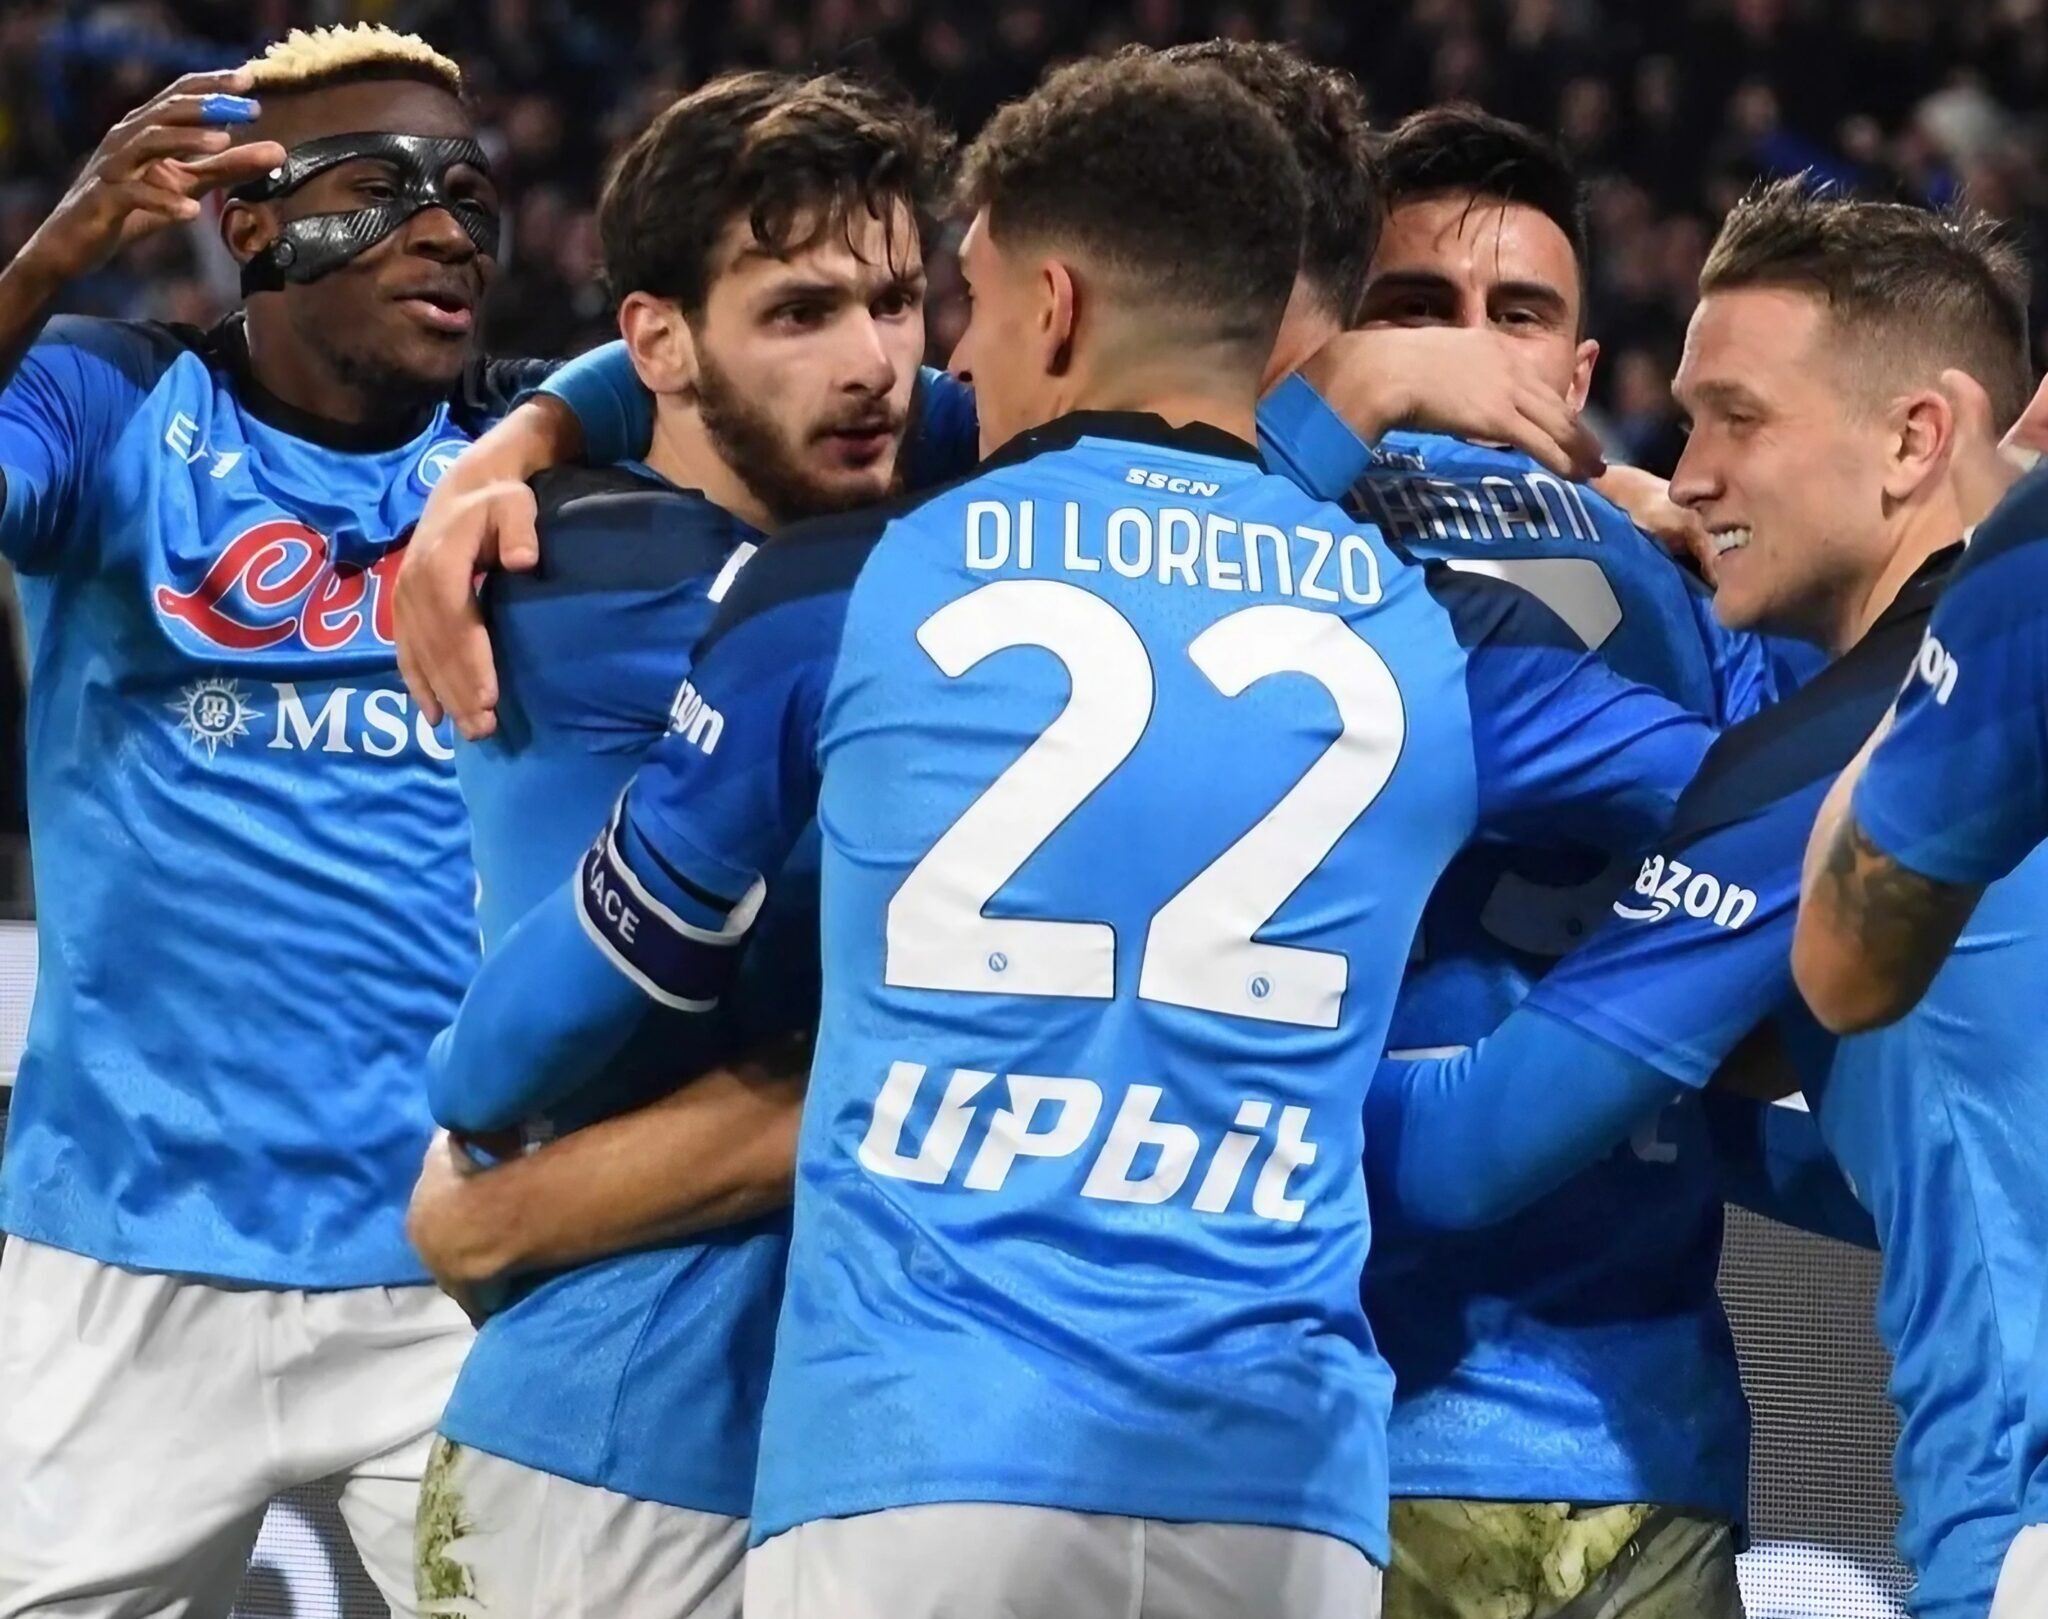 Calciatori SSC Napoli esultano dopo un goal